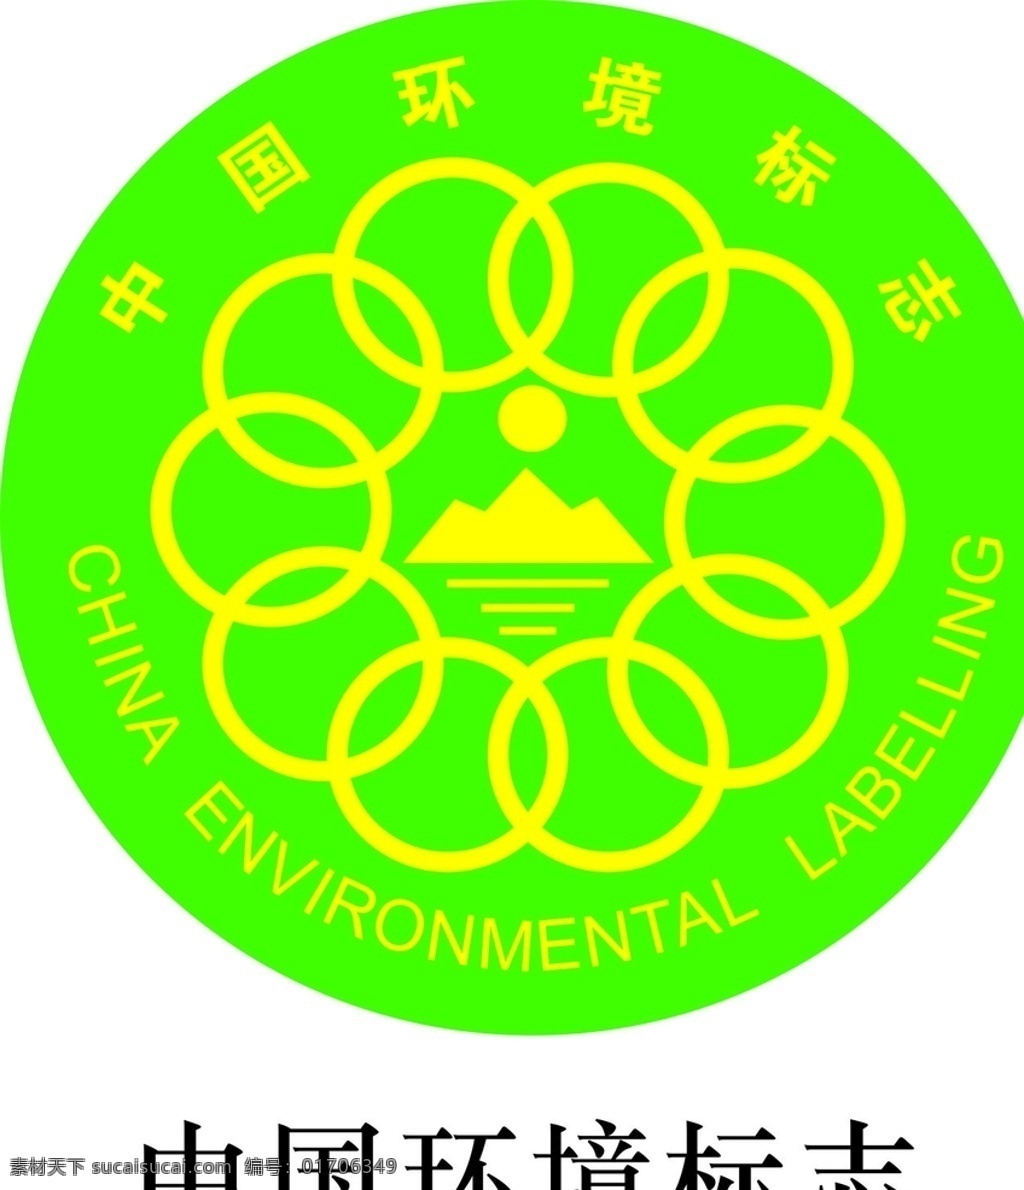 中国环境标志 包装 图标 警告 提示 纸箱 包装标志 标志图标 公共标识标志